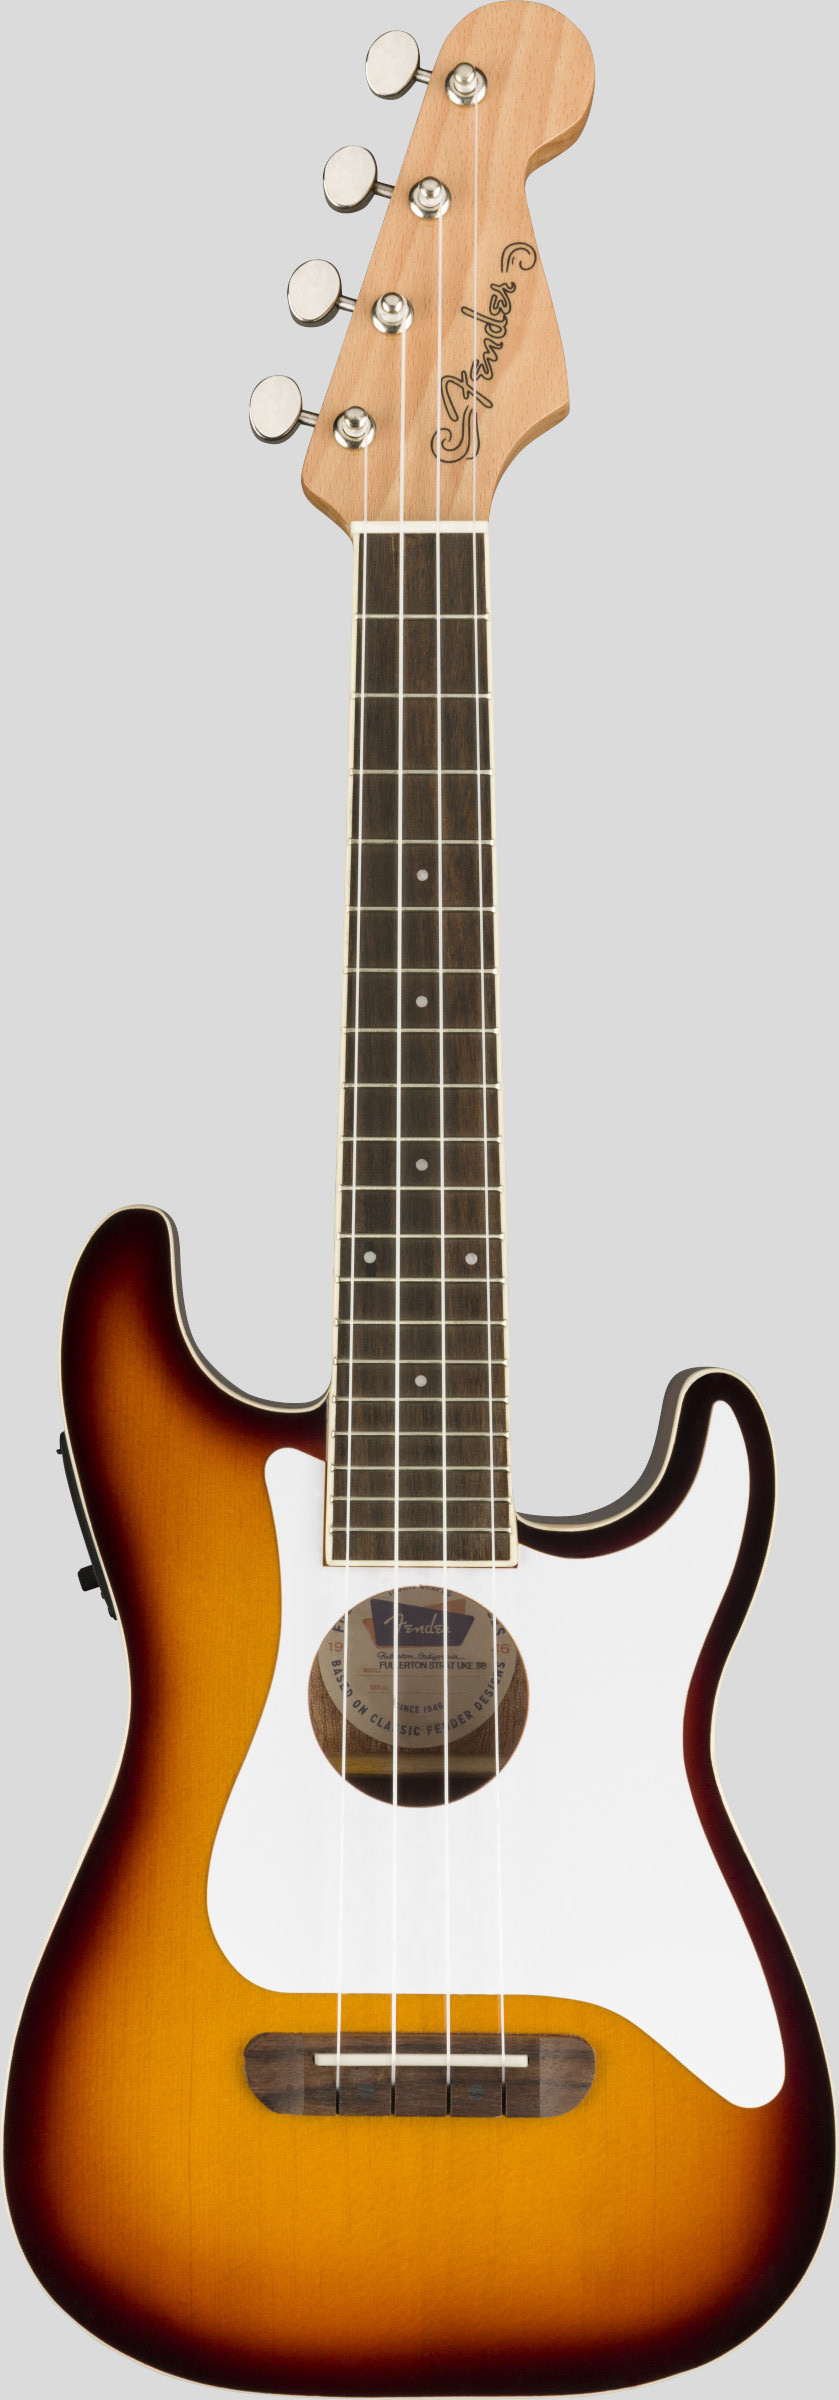 Fender Fullerton Stratocaster Concert Ukulele Sunburst 1